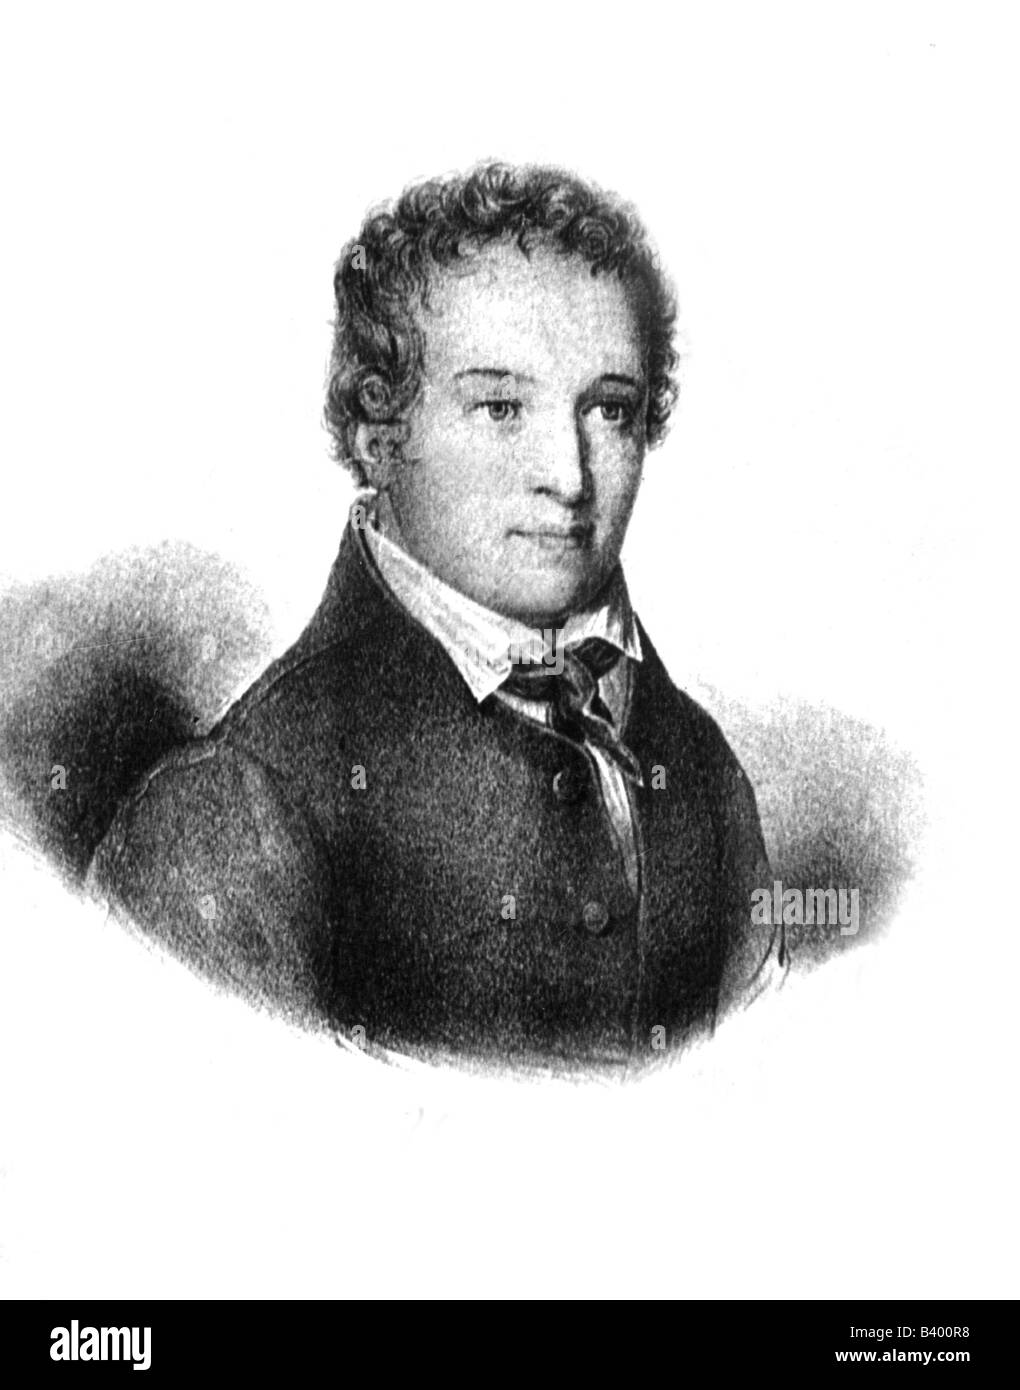 Hauser, Kaspar, 30.4.1812 - 17.12.1833, fondateur allemand, portrait, Banque D'Images